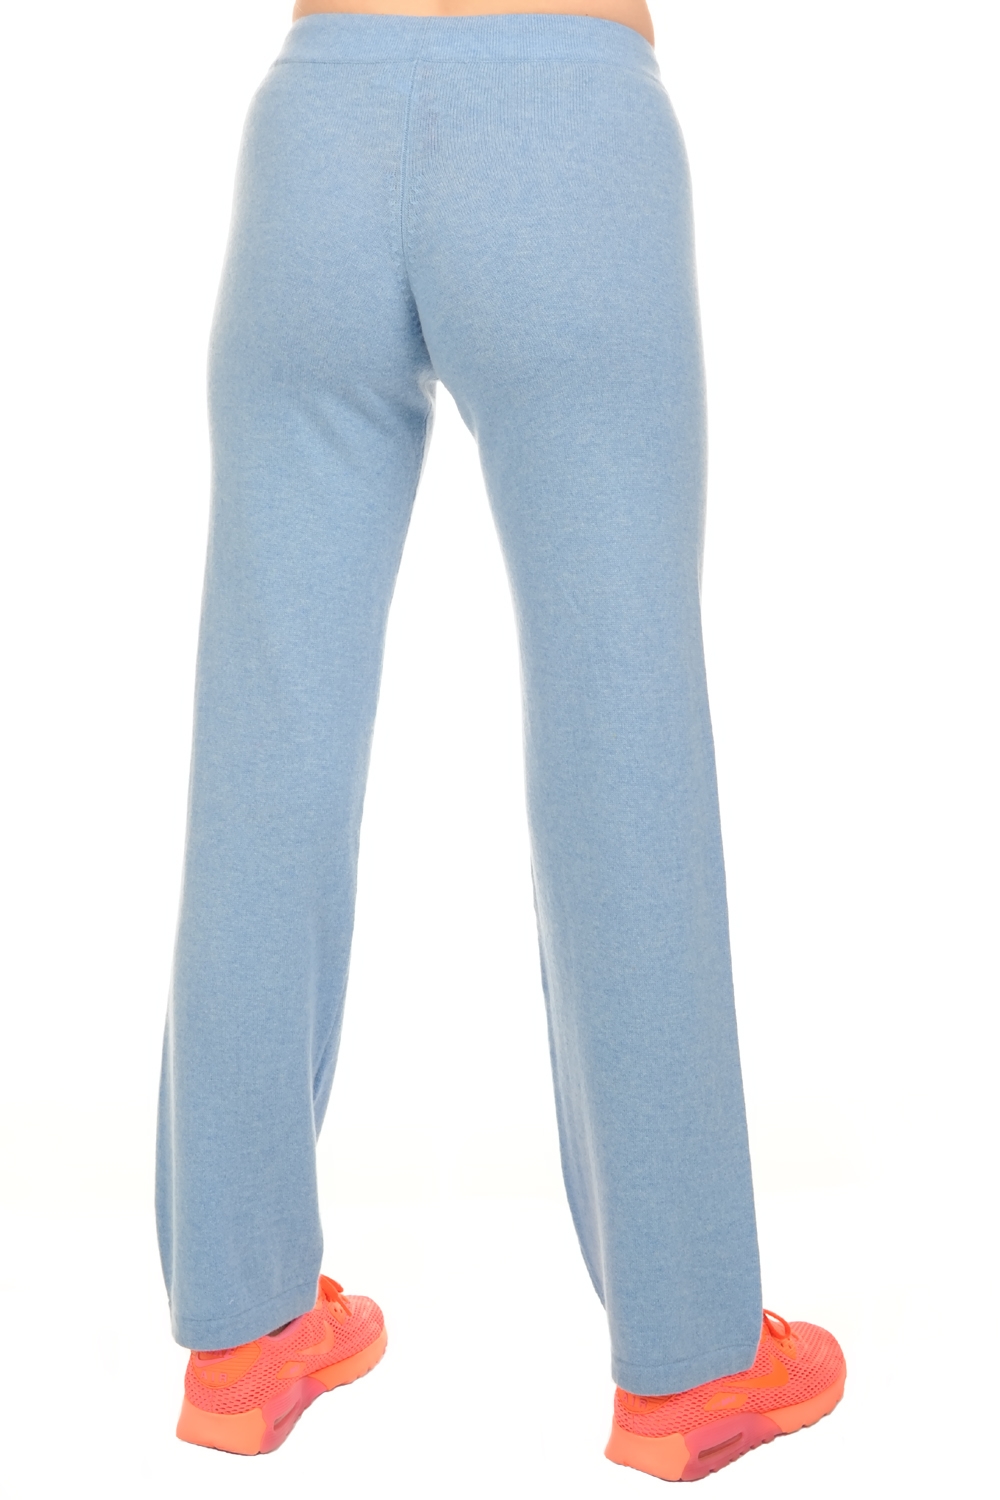 Kasjmier dames kasjmier broeken leggings malice chinees azuur blauw xs